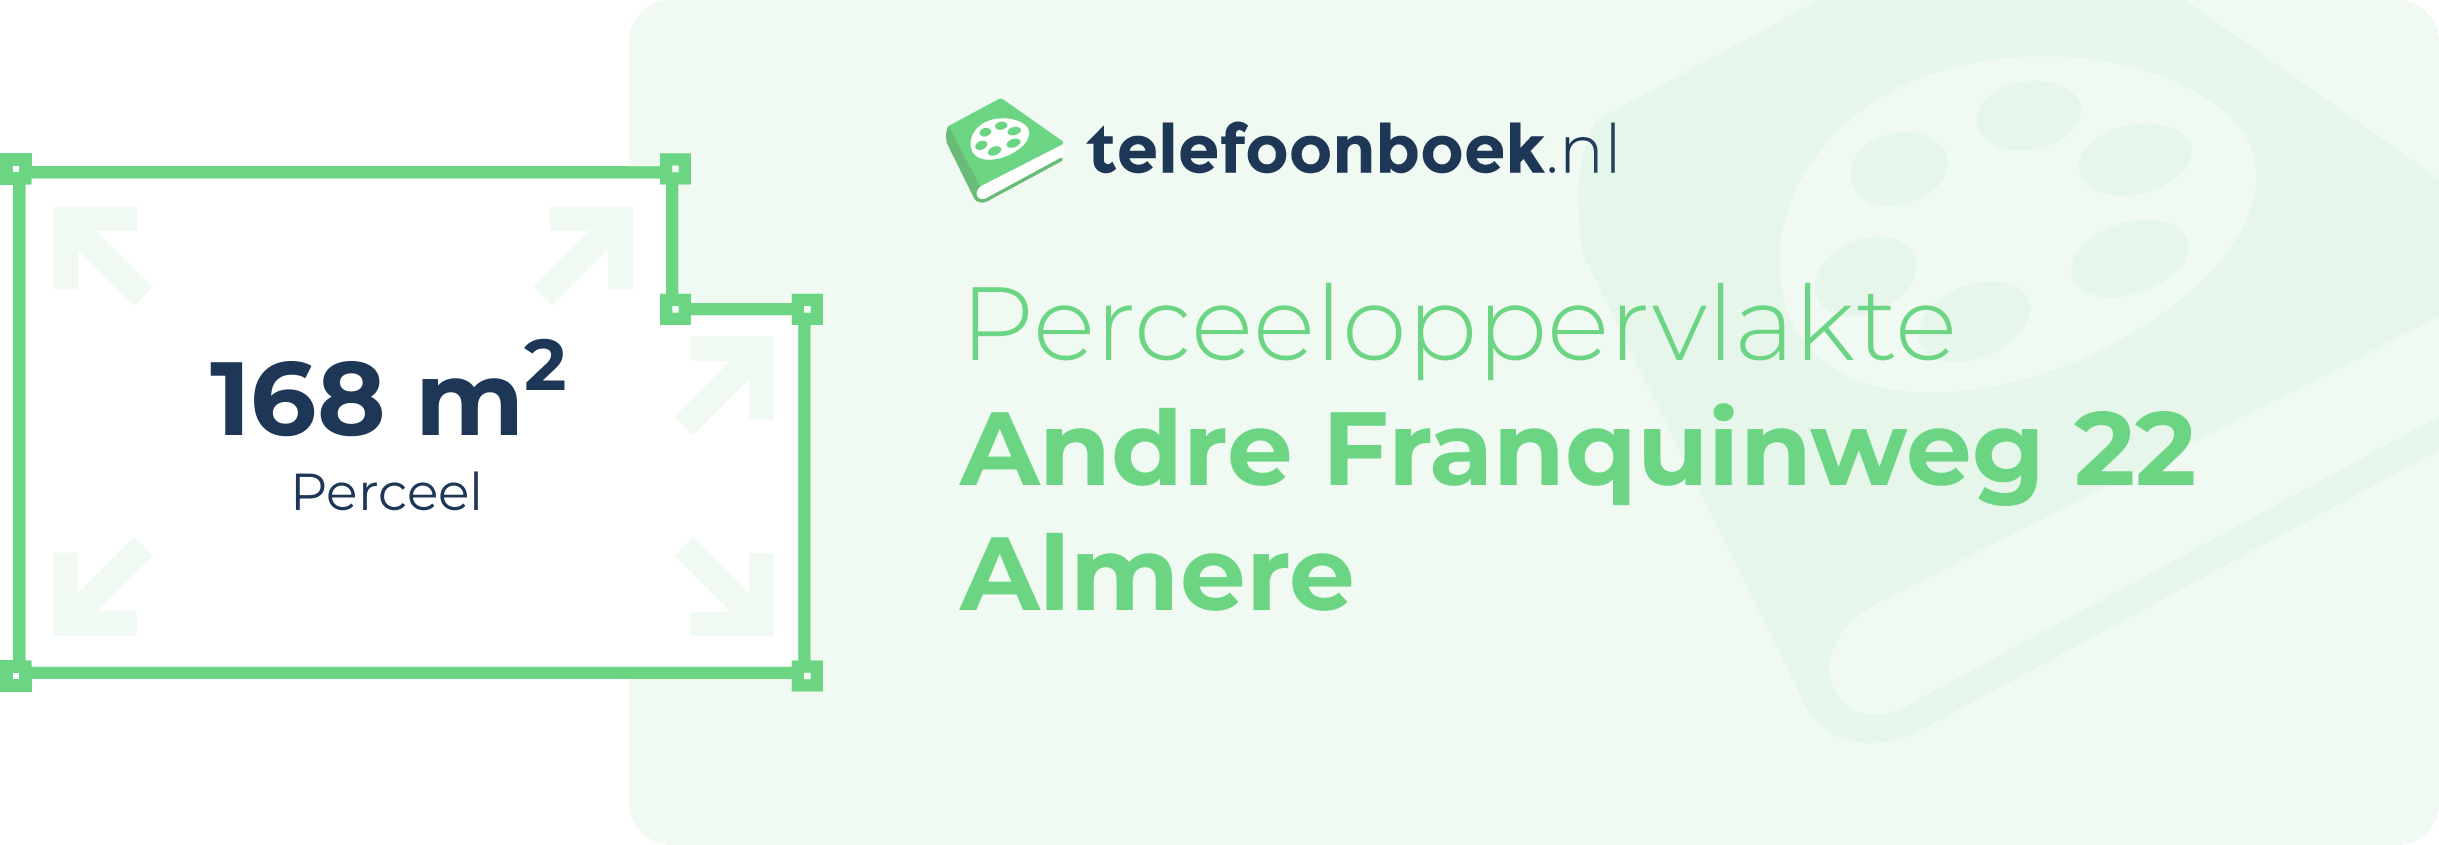 Perceeloppervlakte Andre Franquinweg 22 Almere